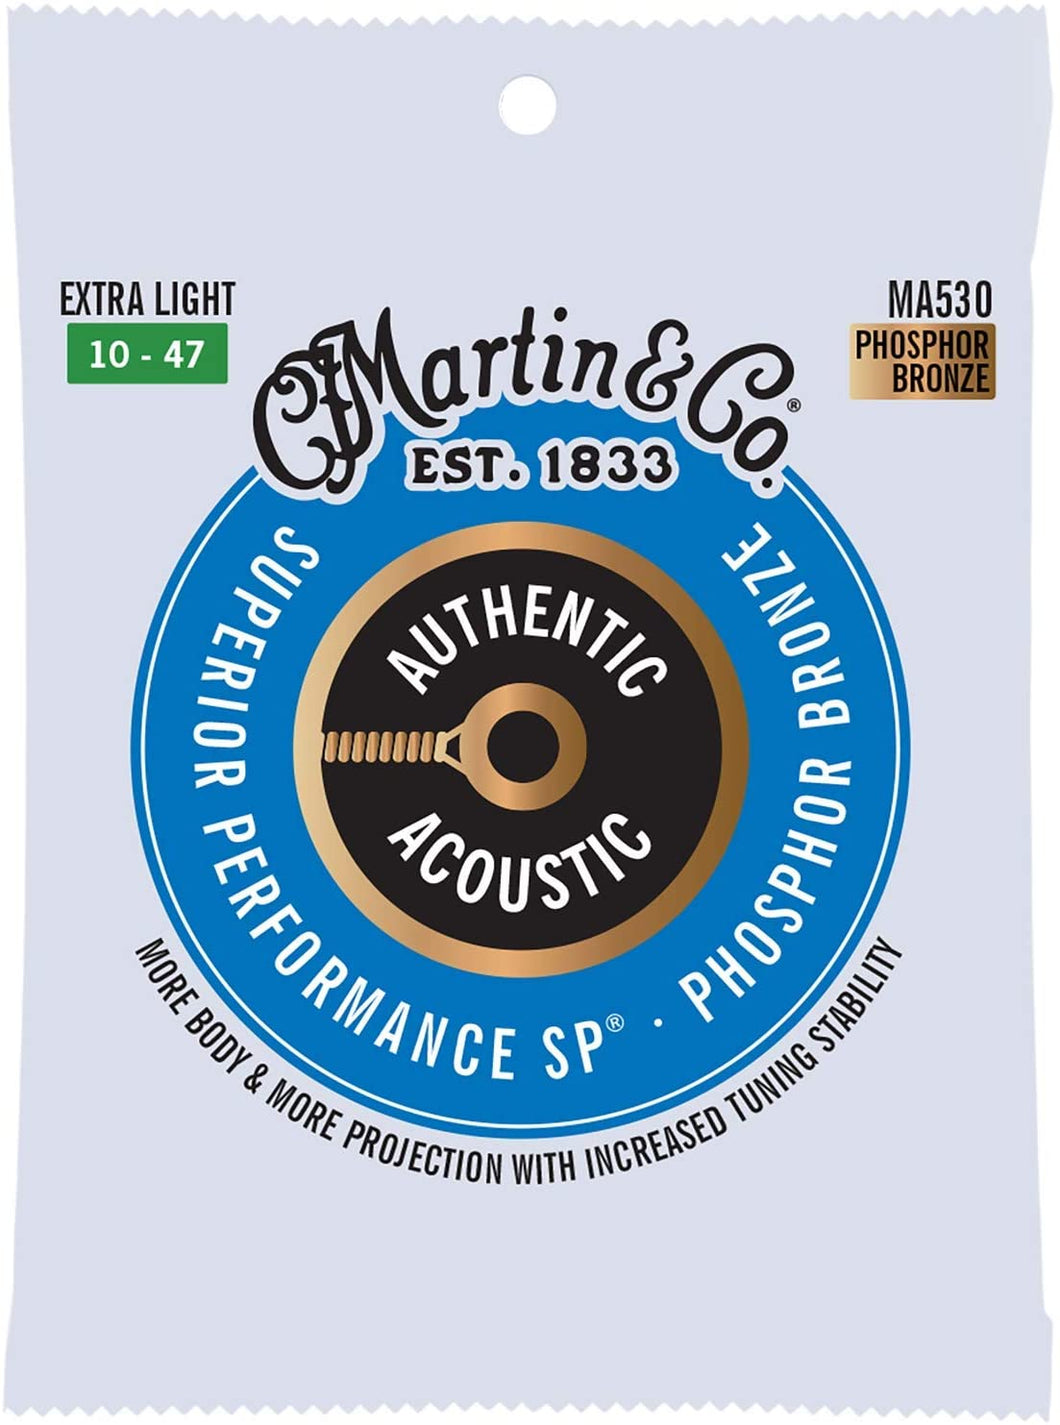 MARTIN MA530 EXTRA LIGHT 10 - 47 BRONZE PHOSPHORE AUTHENTIC ACOUSTIC PERFORMANCE SUPÉRIEURE SP® CORDES DE GUITARE